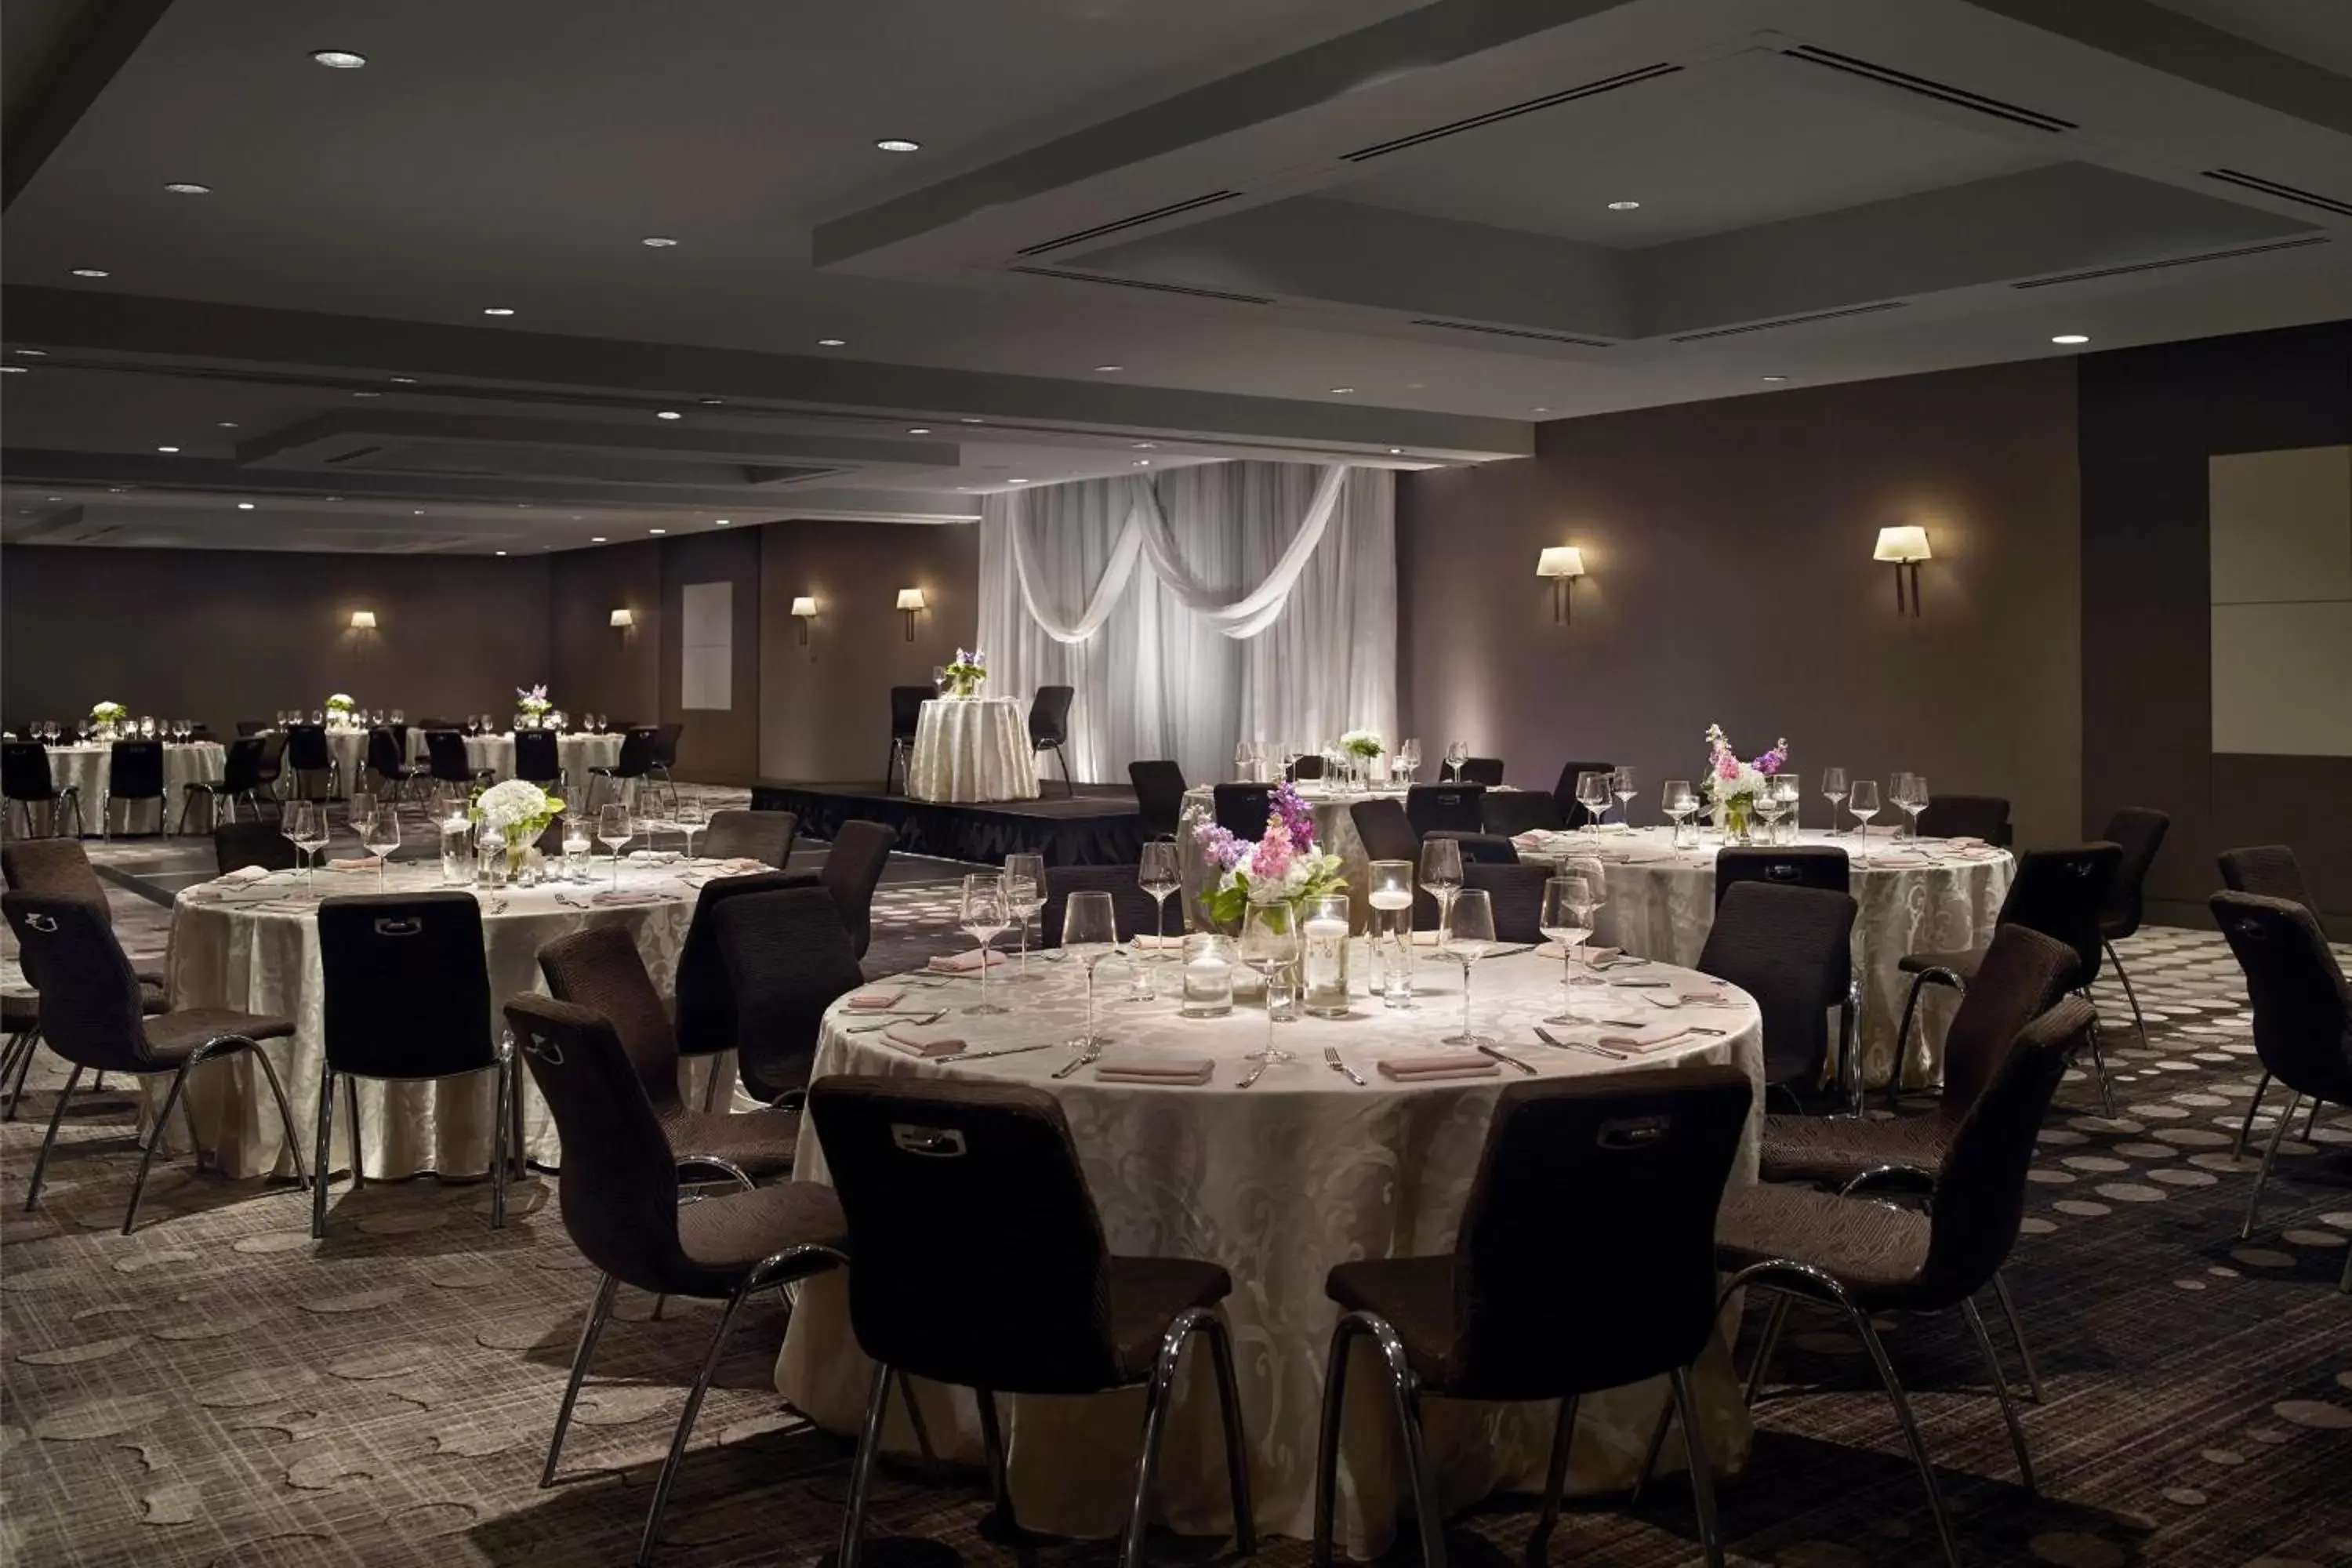 Lobby or reception, Banquet Facilities in Le Meridien Atlanta Perimeter